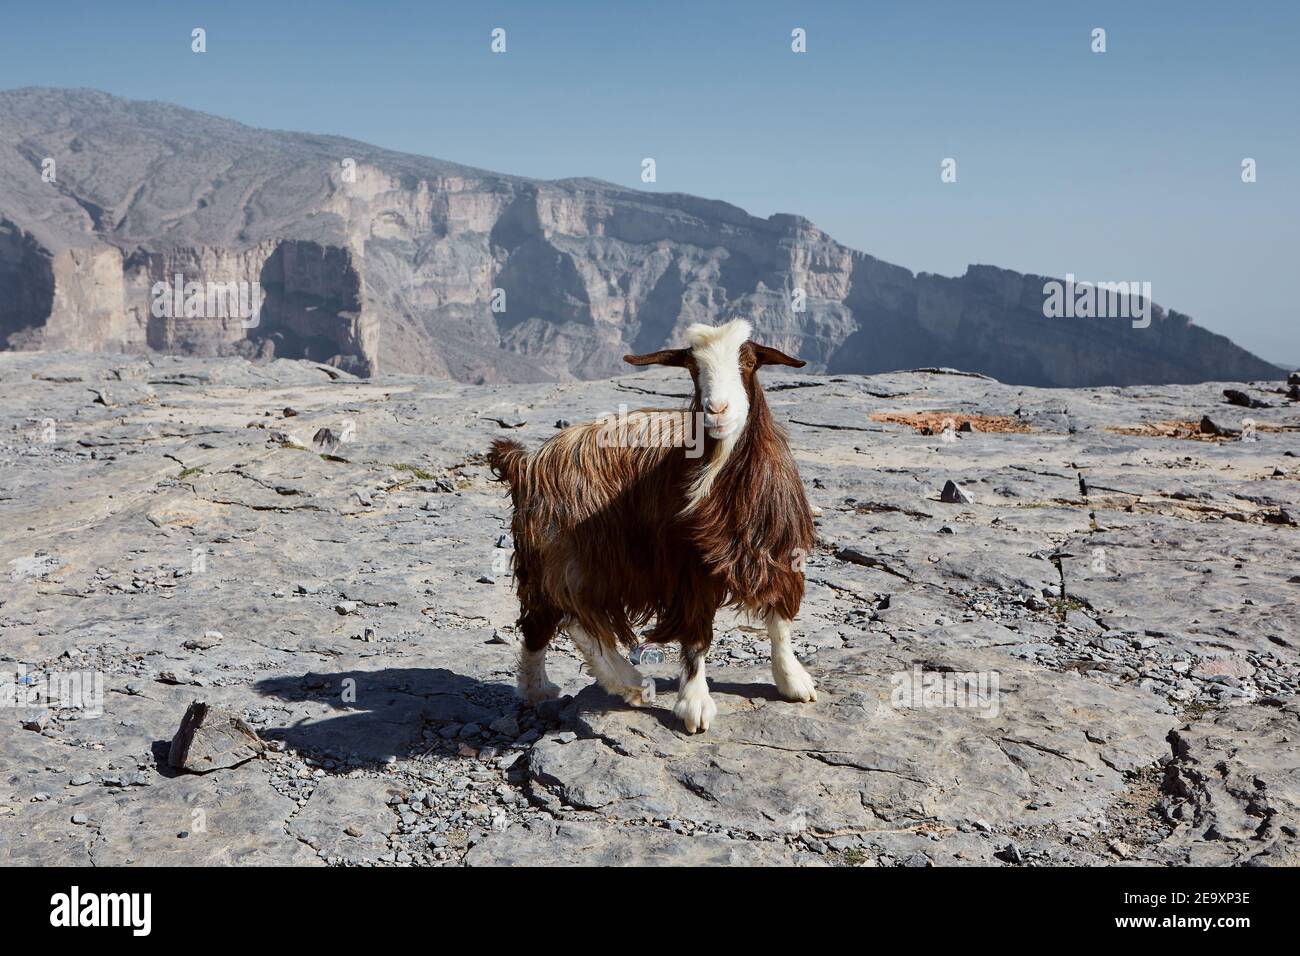 Capra curiosa che guarda la macchina fotografica contro il canyon di montagna. Jebel Shams in Oman Foto Stock